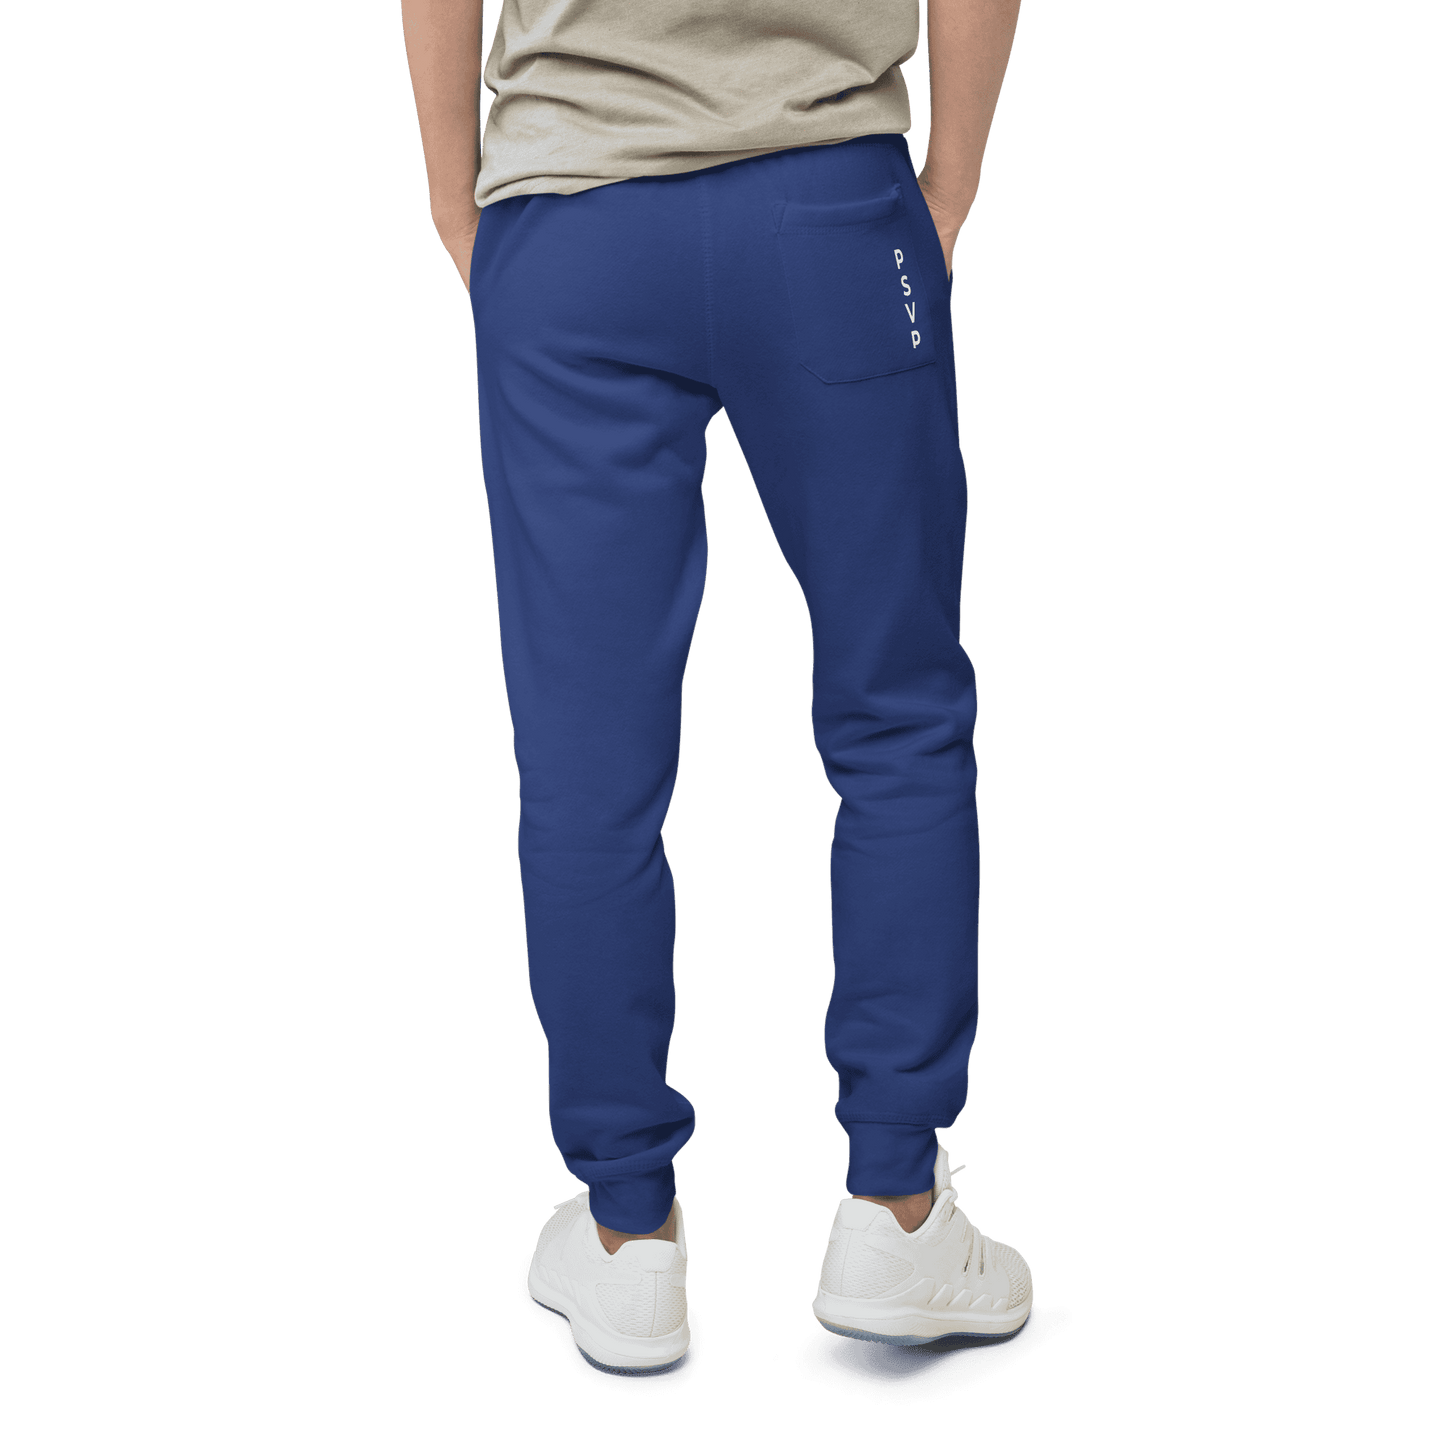 Comfy Royal Blue Fleece Sweatpants - PSVP | Sweatpants | PARADIS SVP